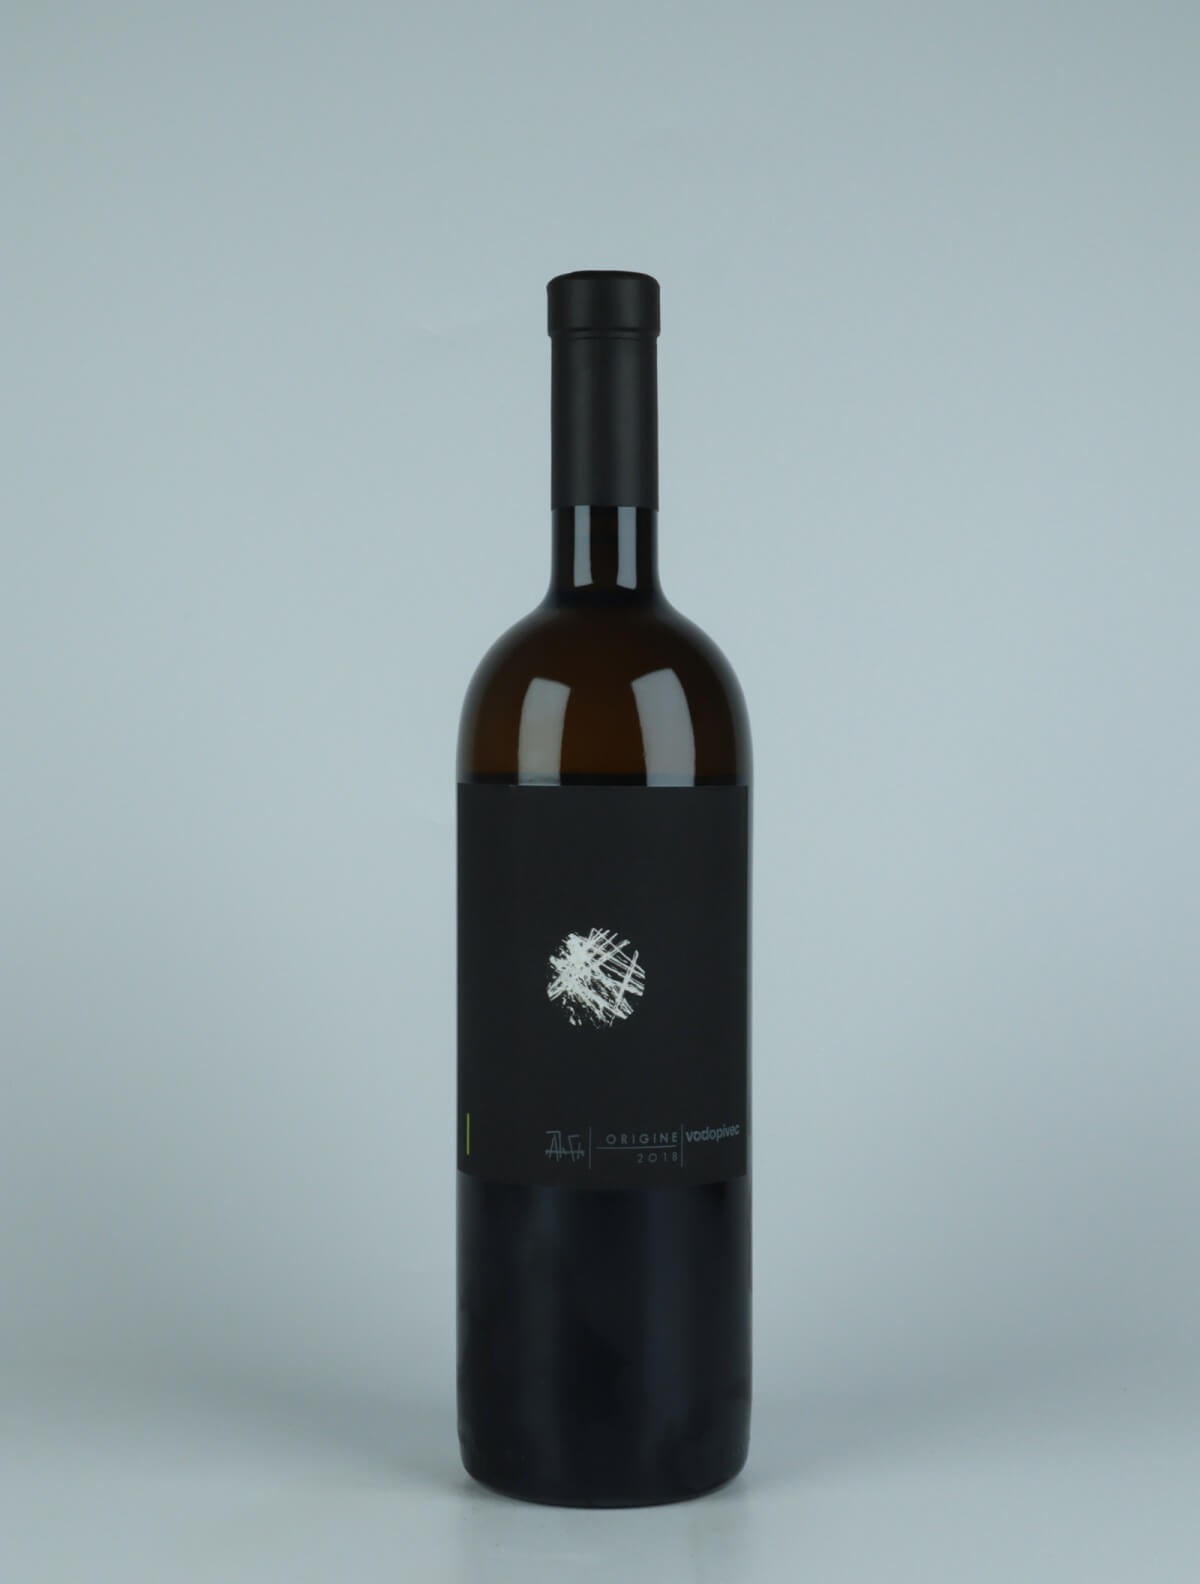 A bottle 2018 Origine Orange wine from Paolo Vodopivec, Friuli in Italy